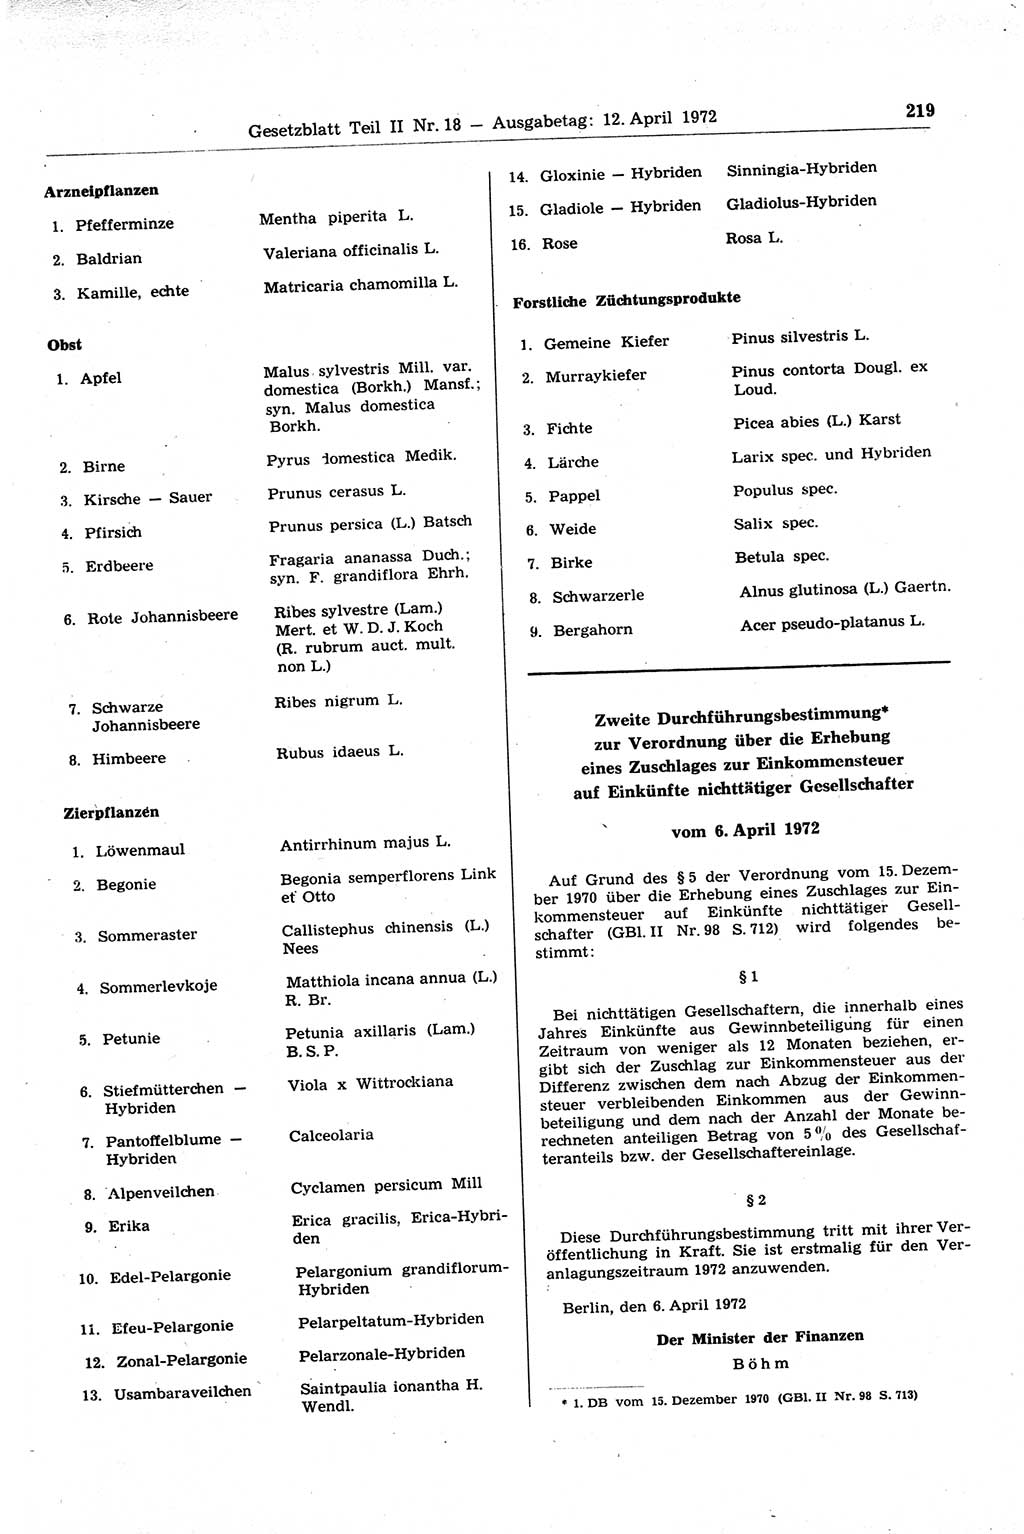 Gesetzblatt (GBl.) der Deutschen Demokratischen Republik (DDR) Teil ⅠⅠ 1972, Seite 219 (GBl. DDR ⅠⅠ 1972, S. 219)